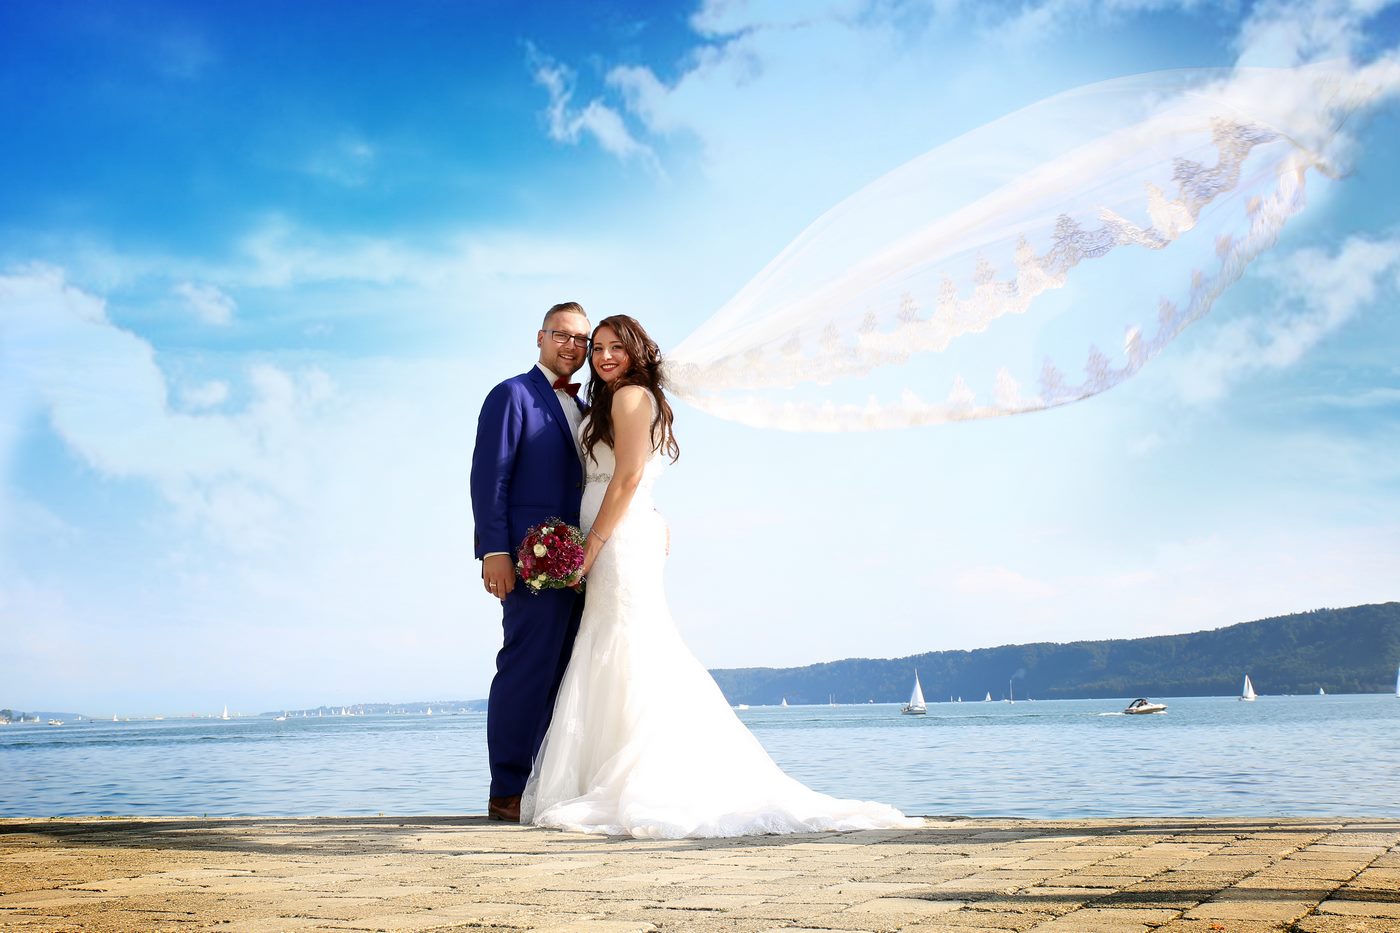 Brautpaar am Bodensee fotografiert und der Schleier weht im Wind